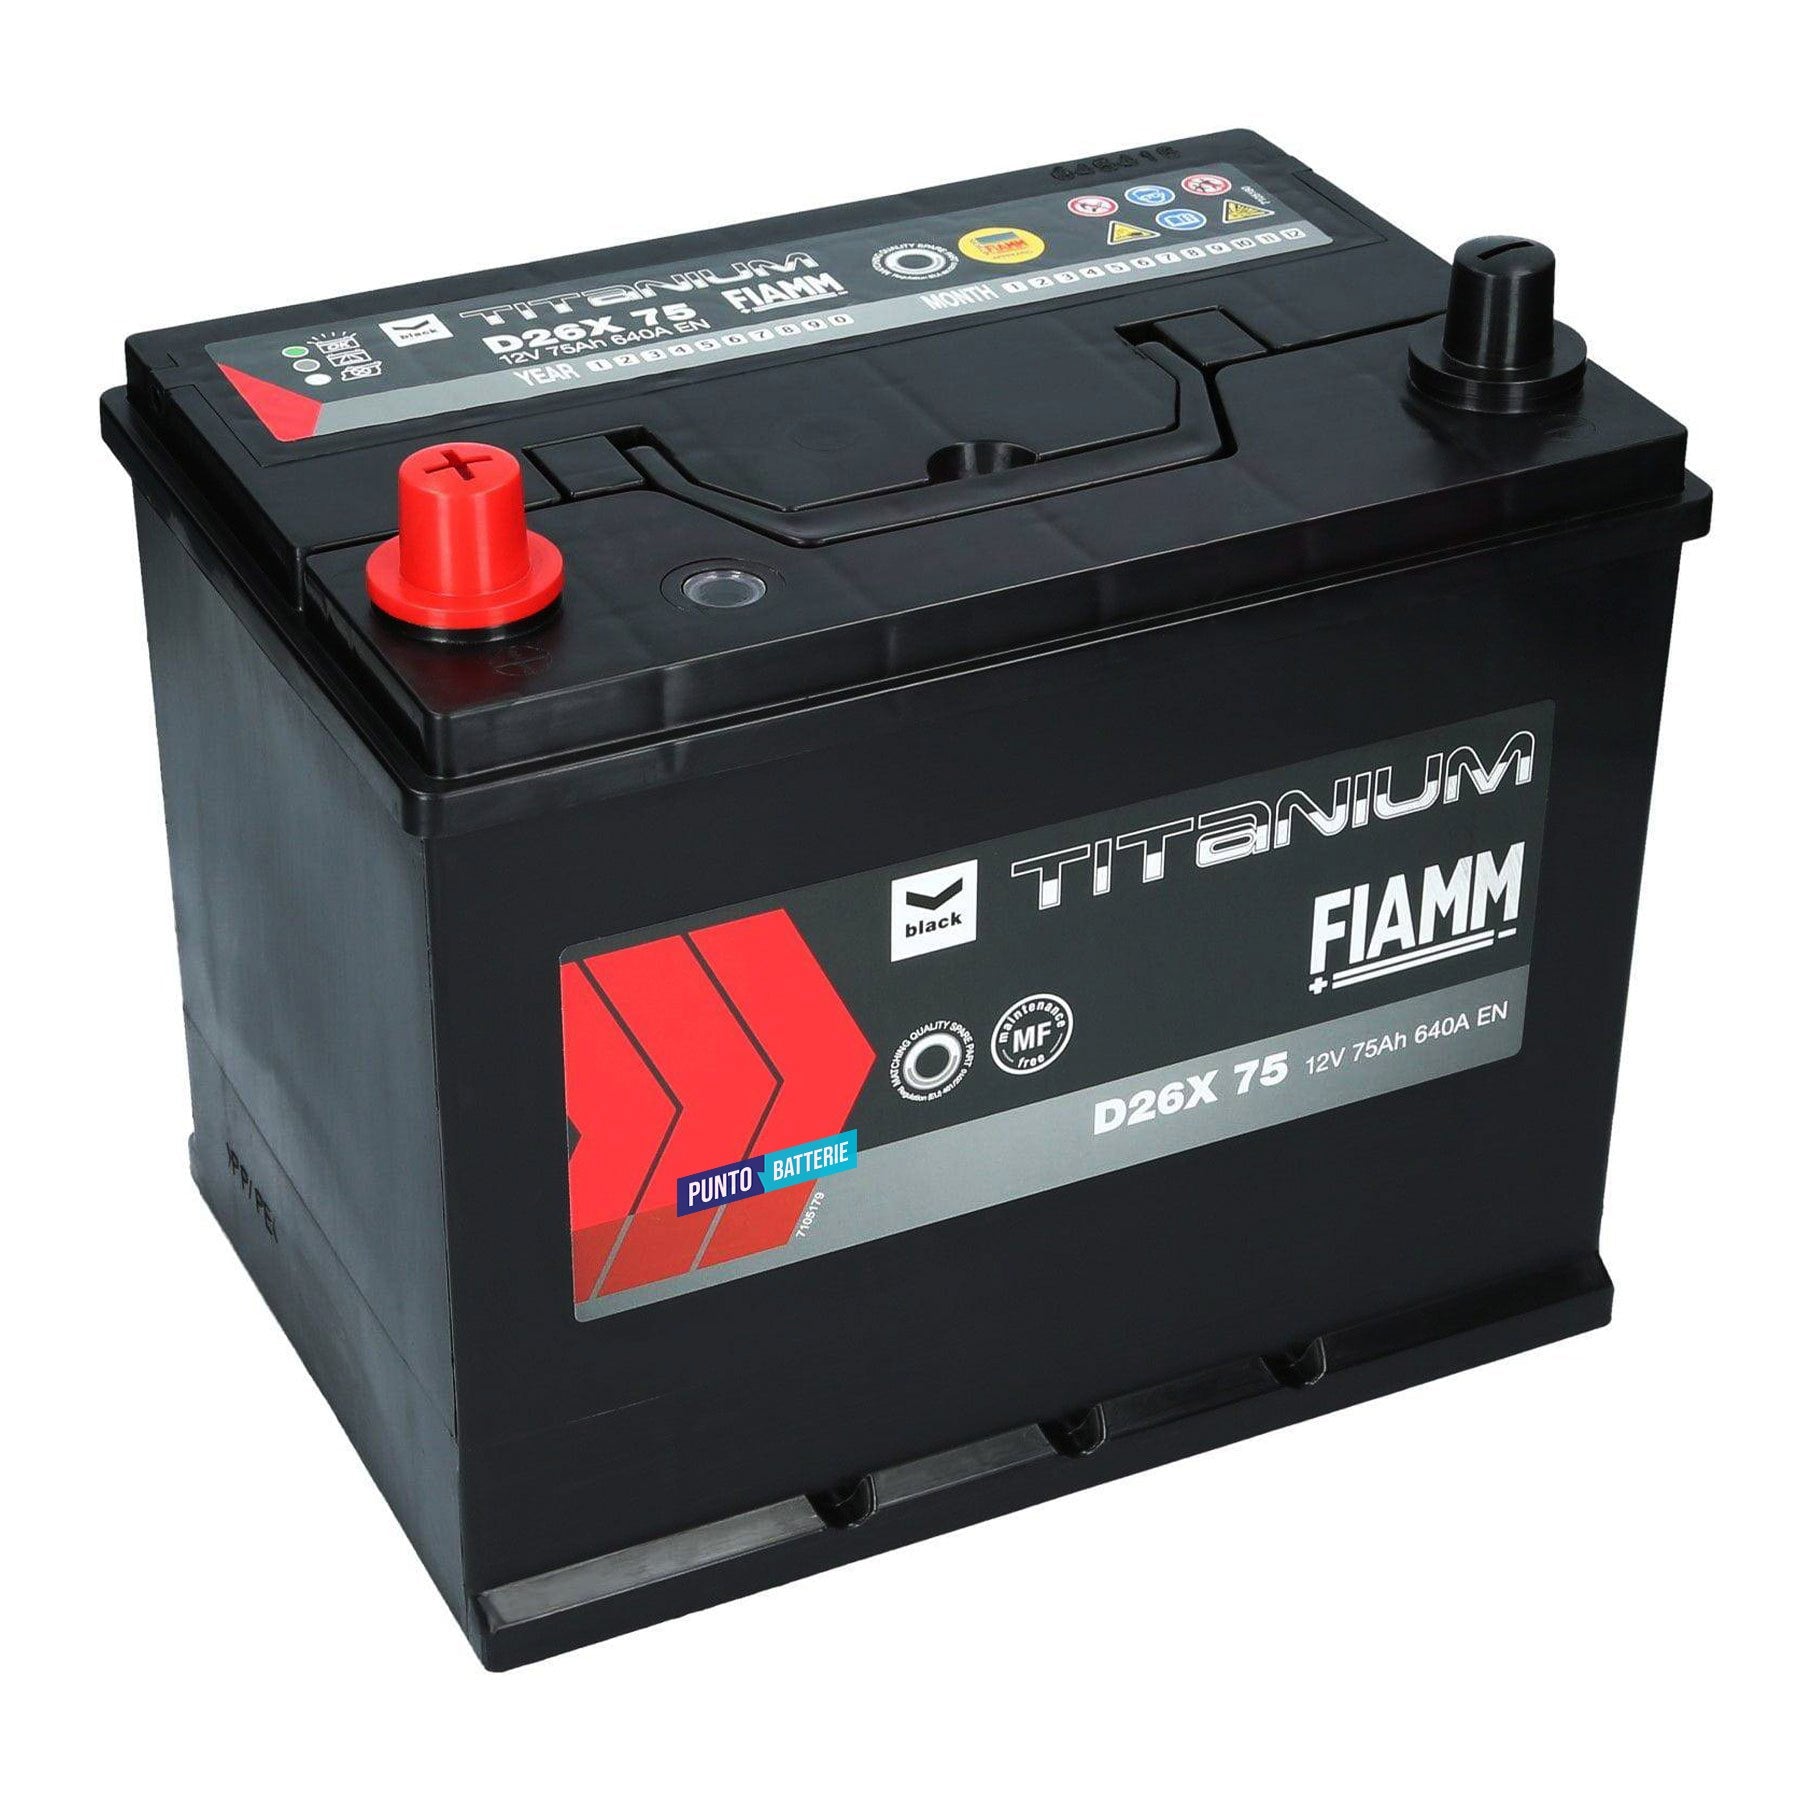 Batteria originale Fiamm Black Titanium D26X 75, dimensioni 259 x 178 x 221, polo positivo a sinistra, 12 volt, 75 amperora, 640 ampere. Batteria per auto e veicoli leggeri.